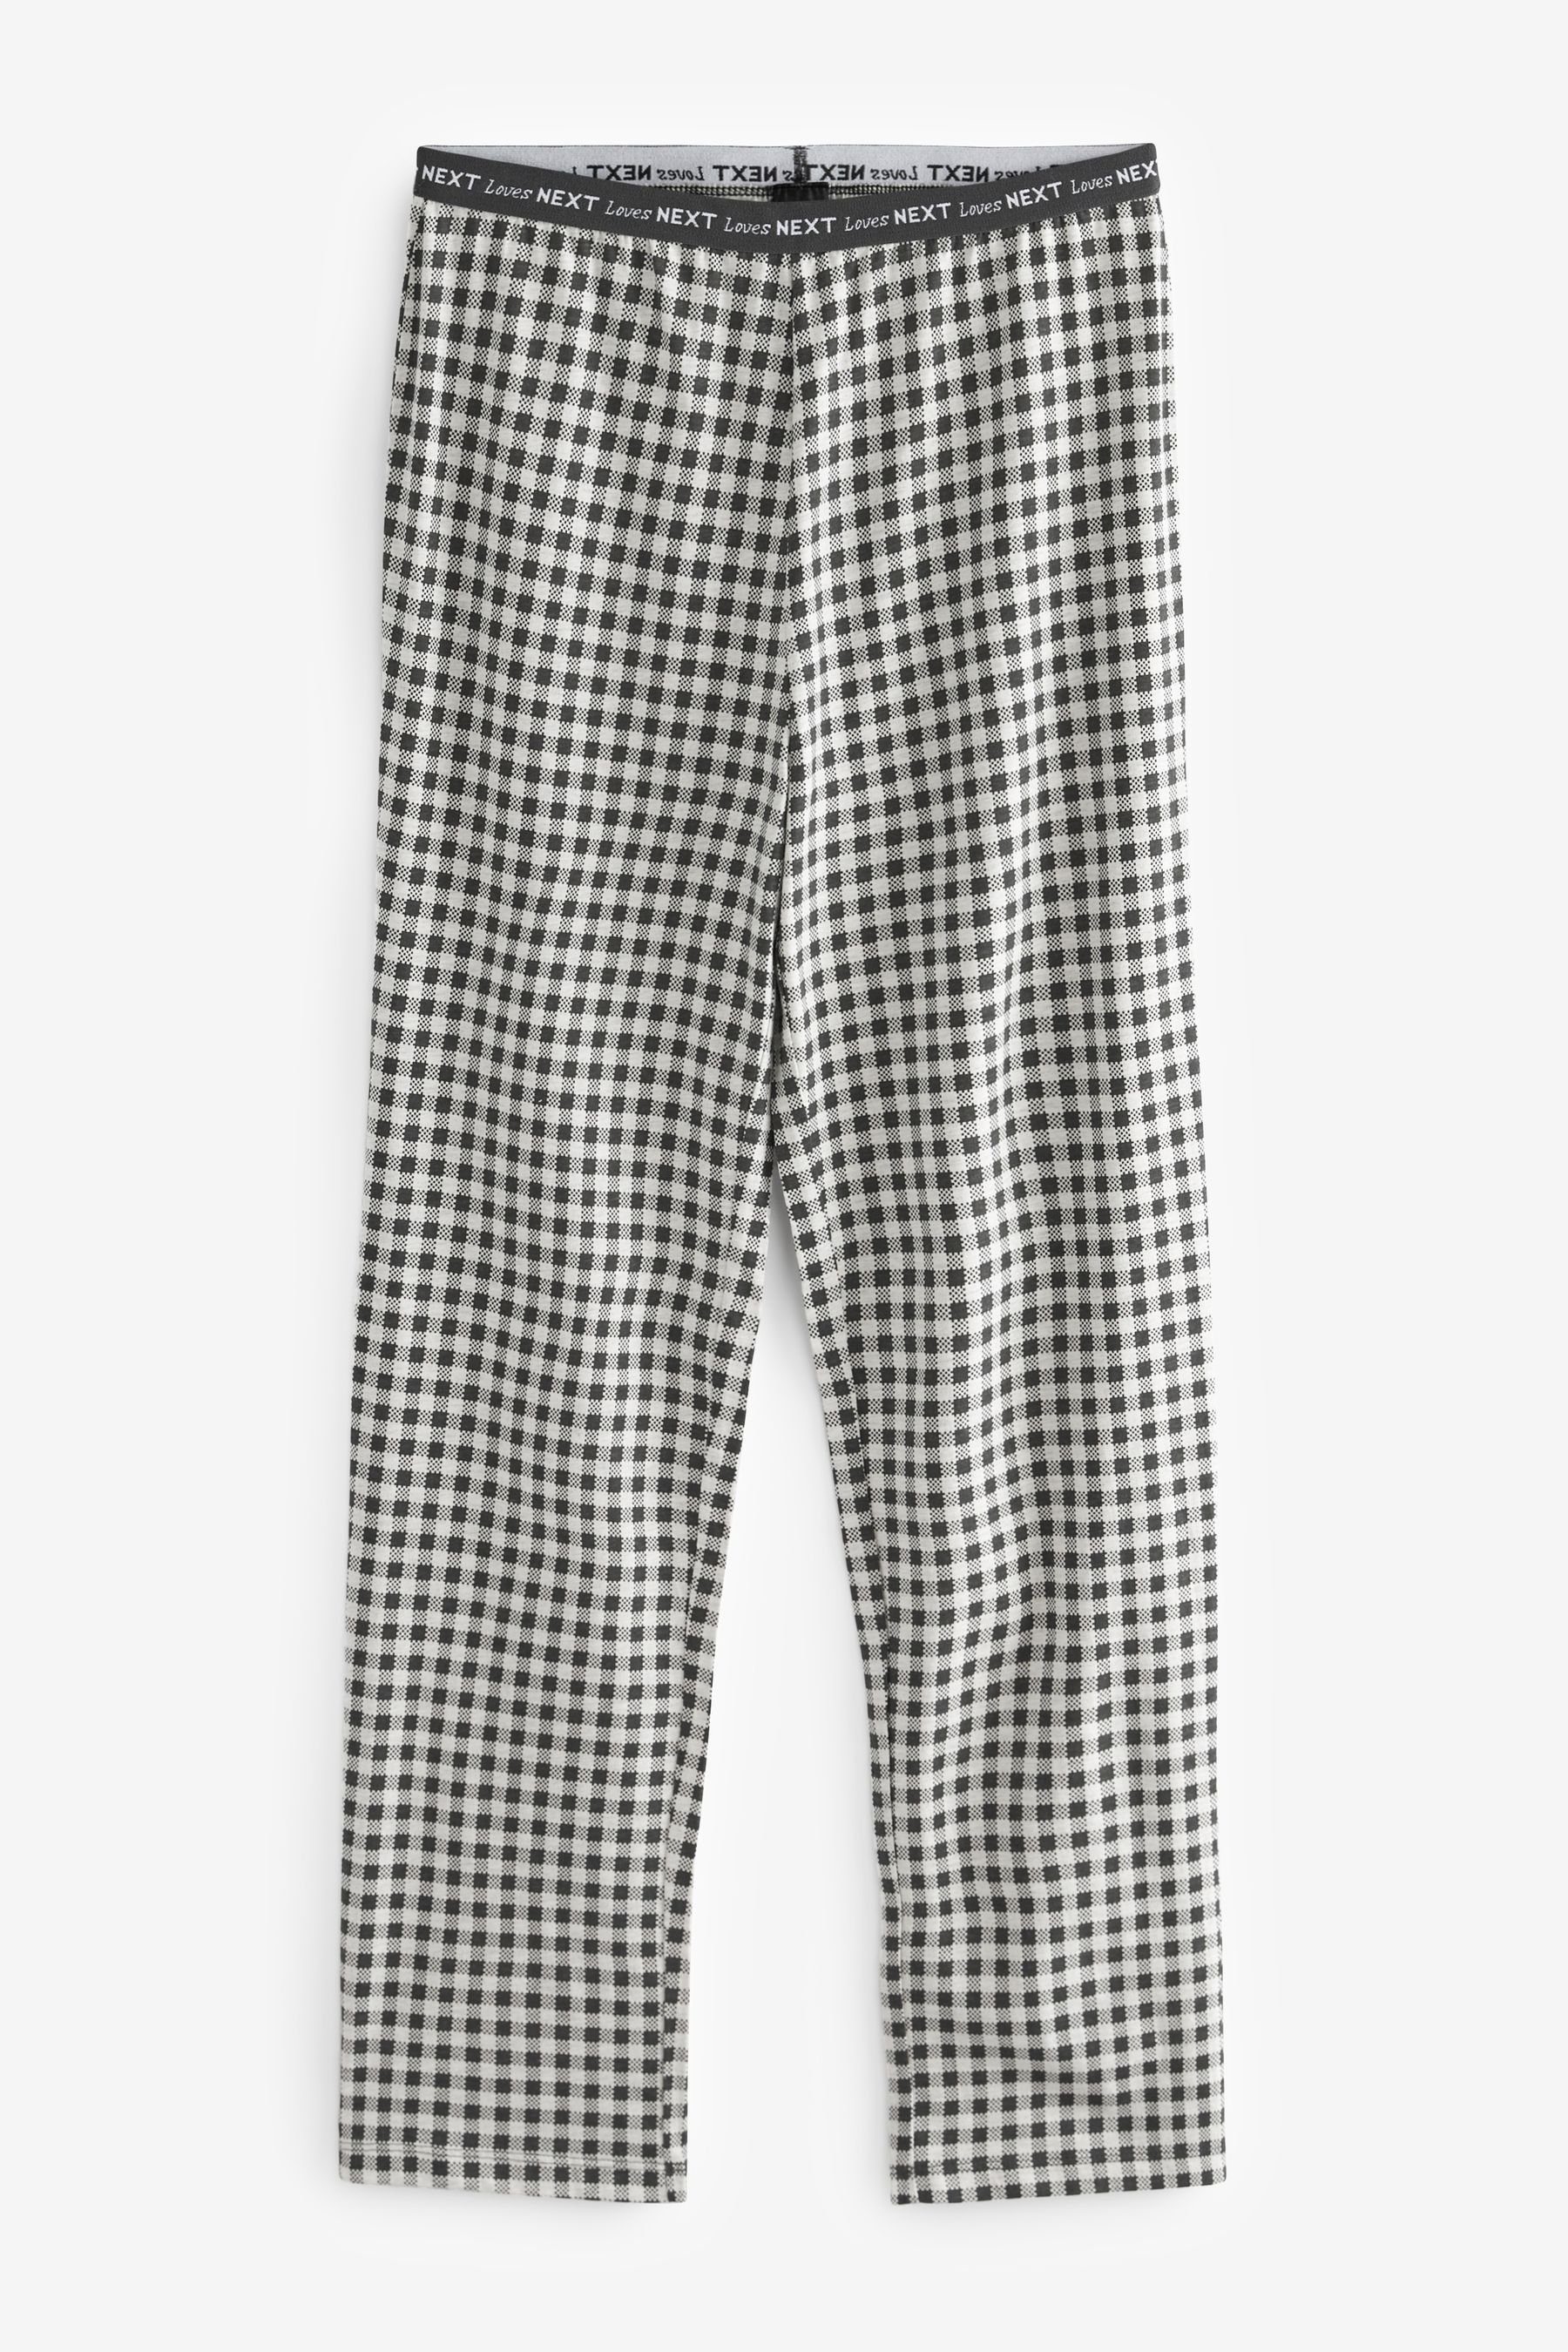 tlg) Baumwoll-Schlafanzug. Pyjama Next (2